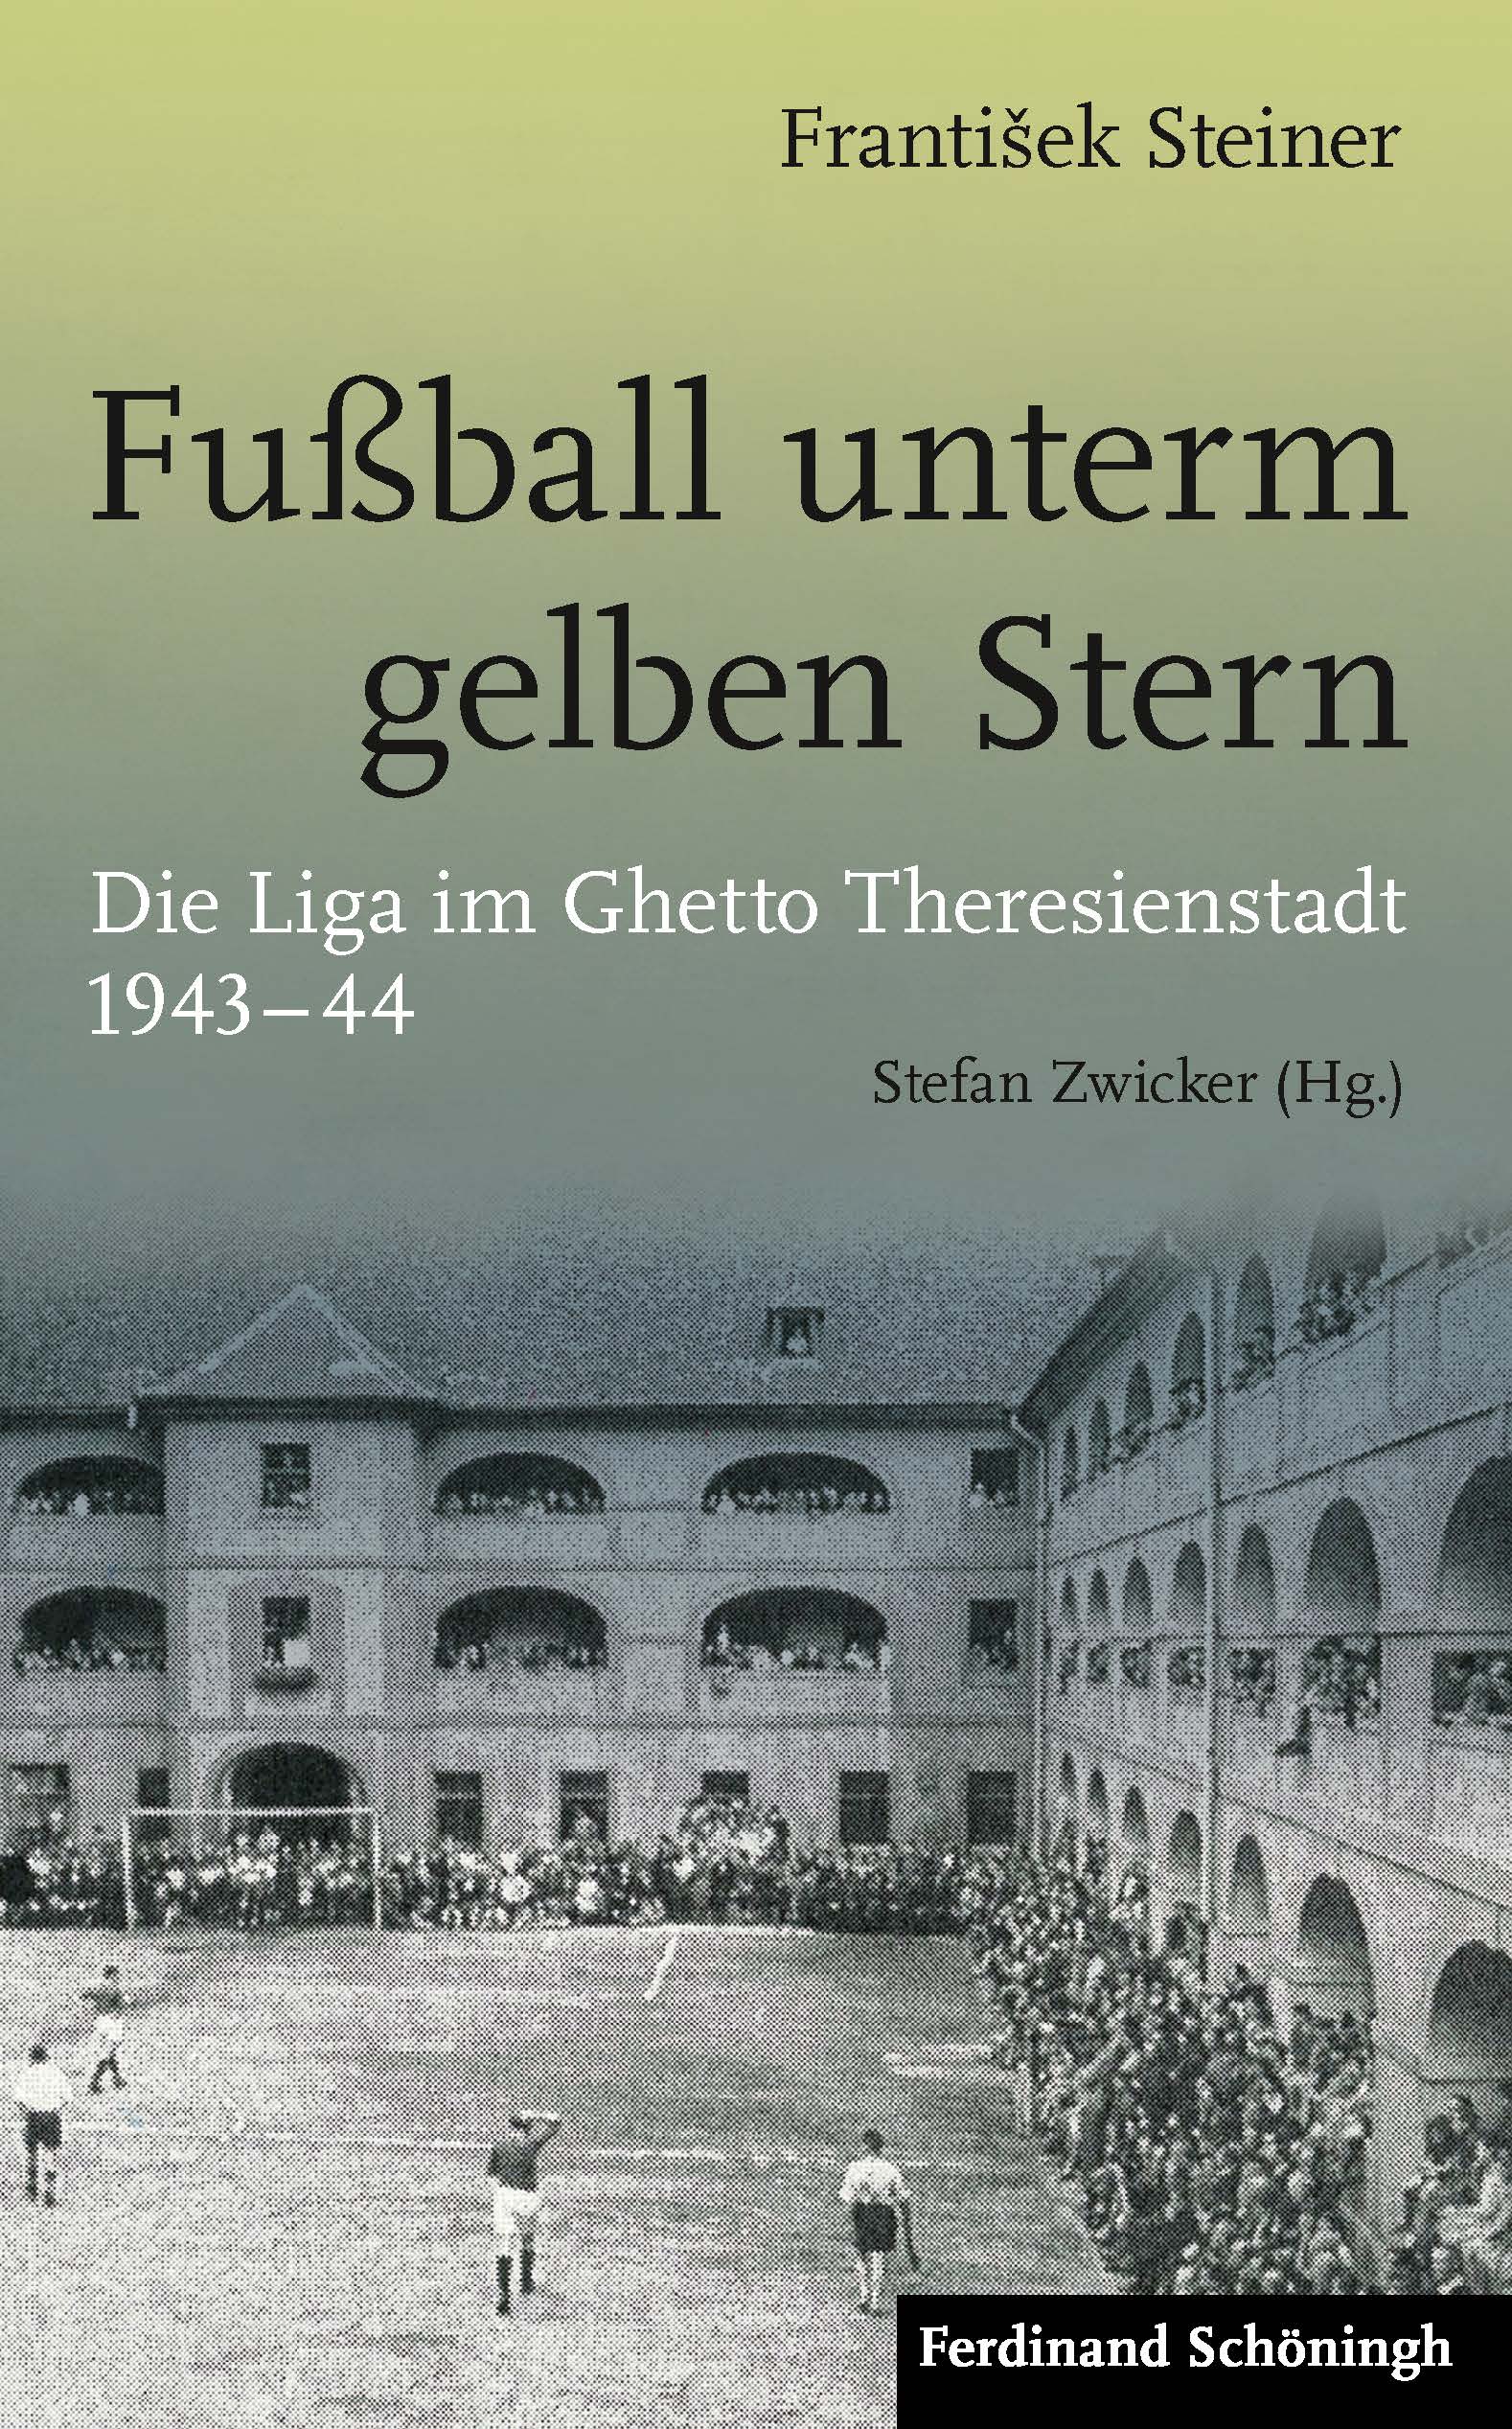 Buchcover Fußball unterm gelben Stern - Die Liga im Ghetto Theresienstadt 1943-44 von Frantisek Steiner